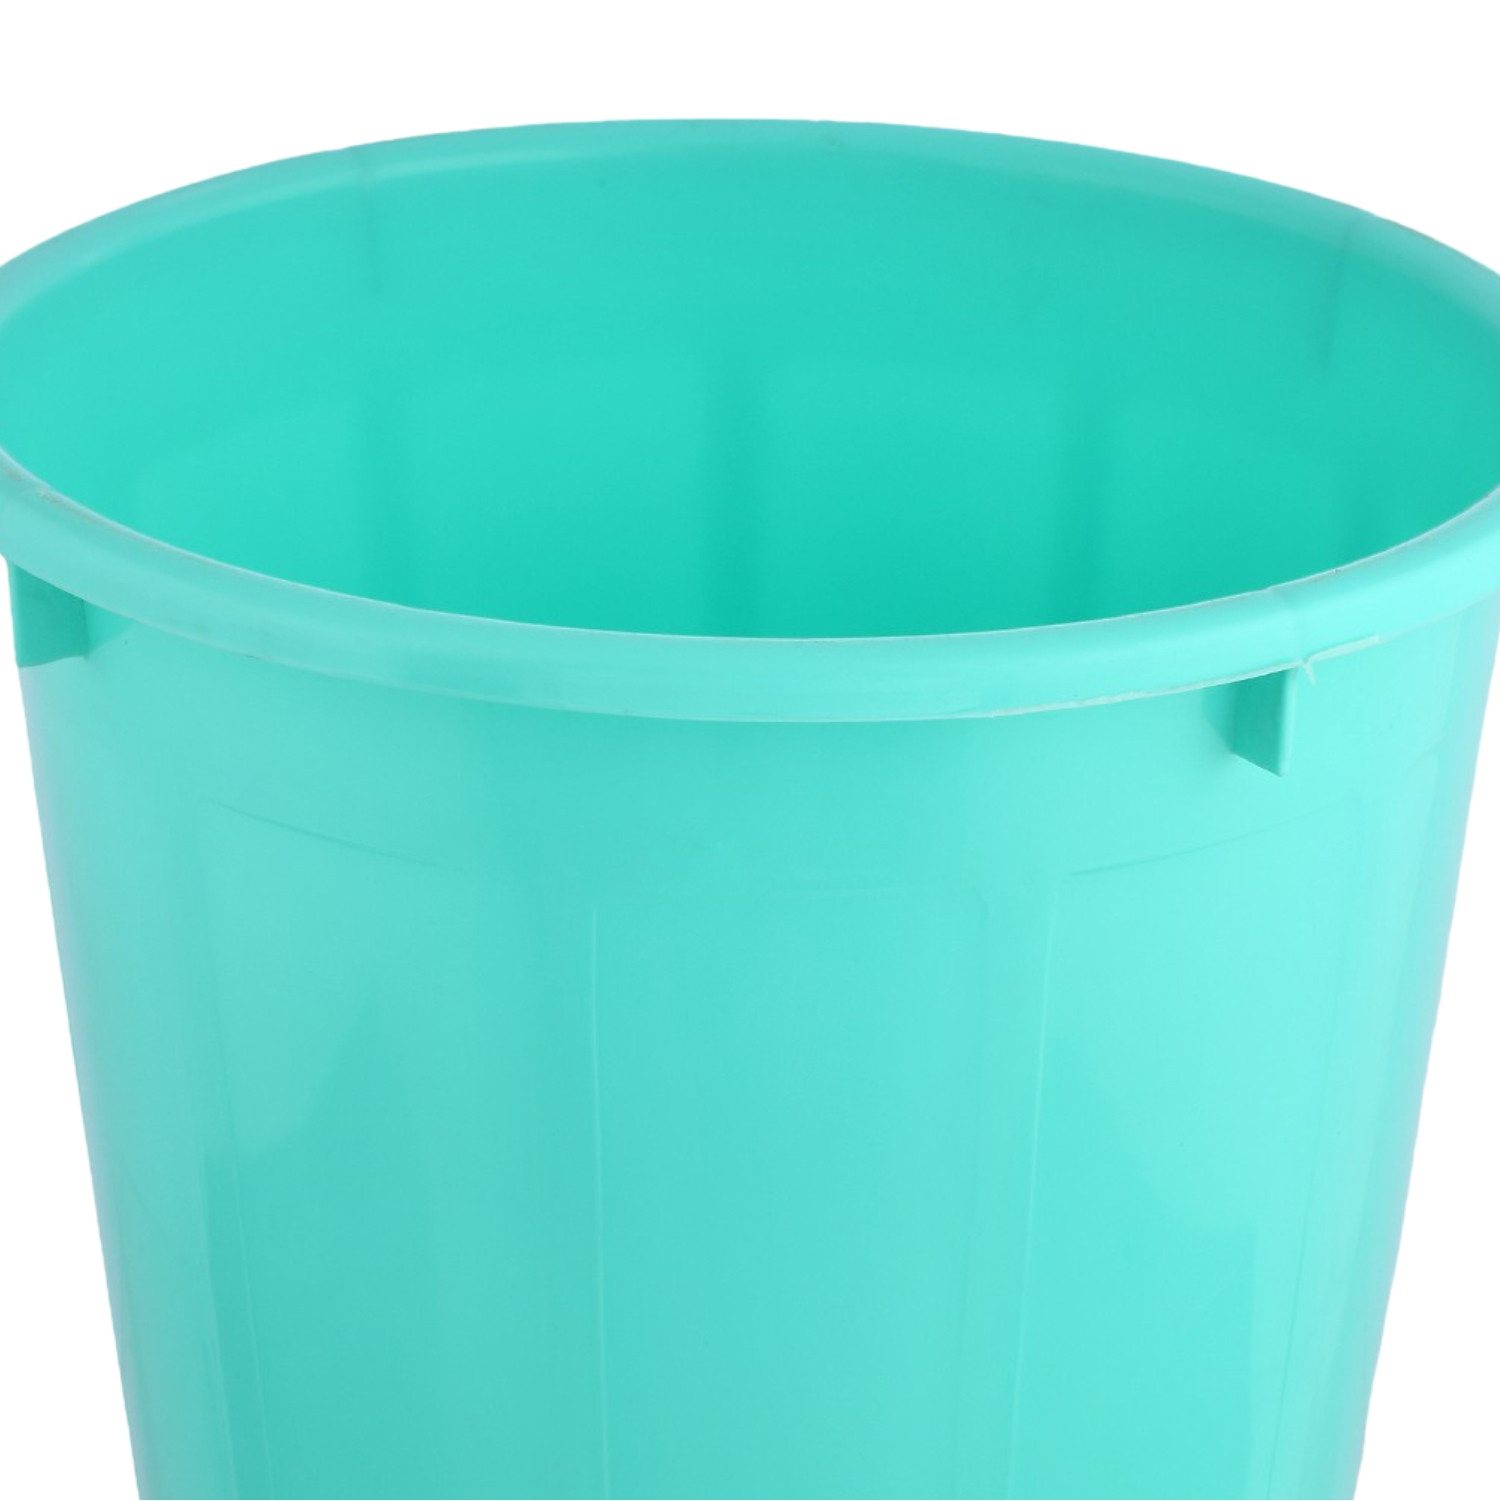 Kuber Industries Dustbin | Open Dustbin | Plastic Garbage Dustbin | Dustbin for Kitchen | Dustbin for Bathroom | Office Dustbin | Plain Sada Dustbin | 7 LTR | Green